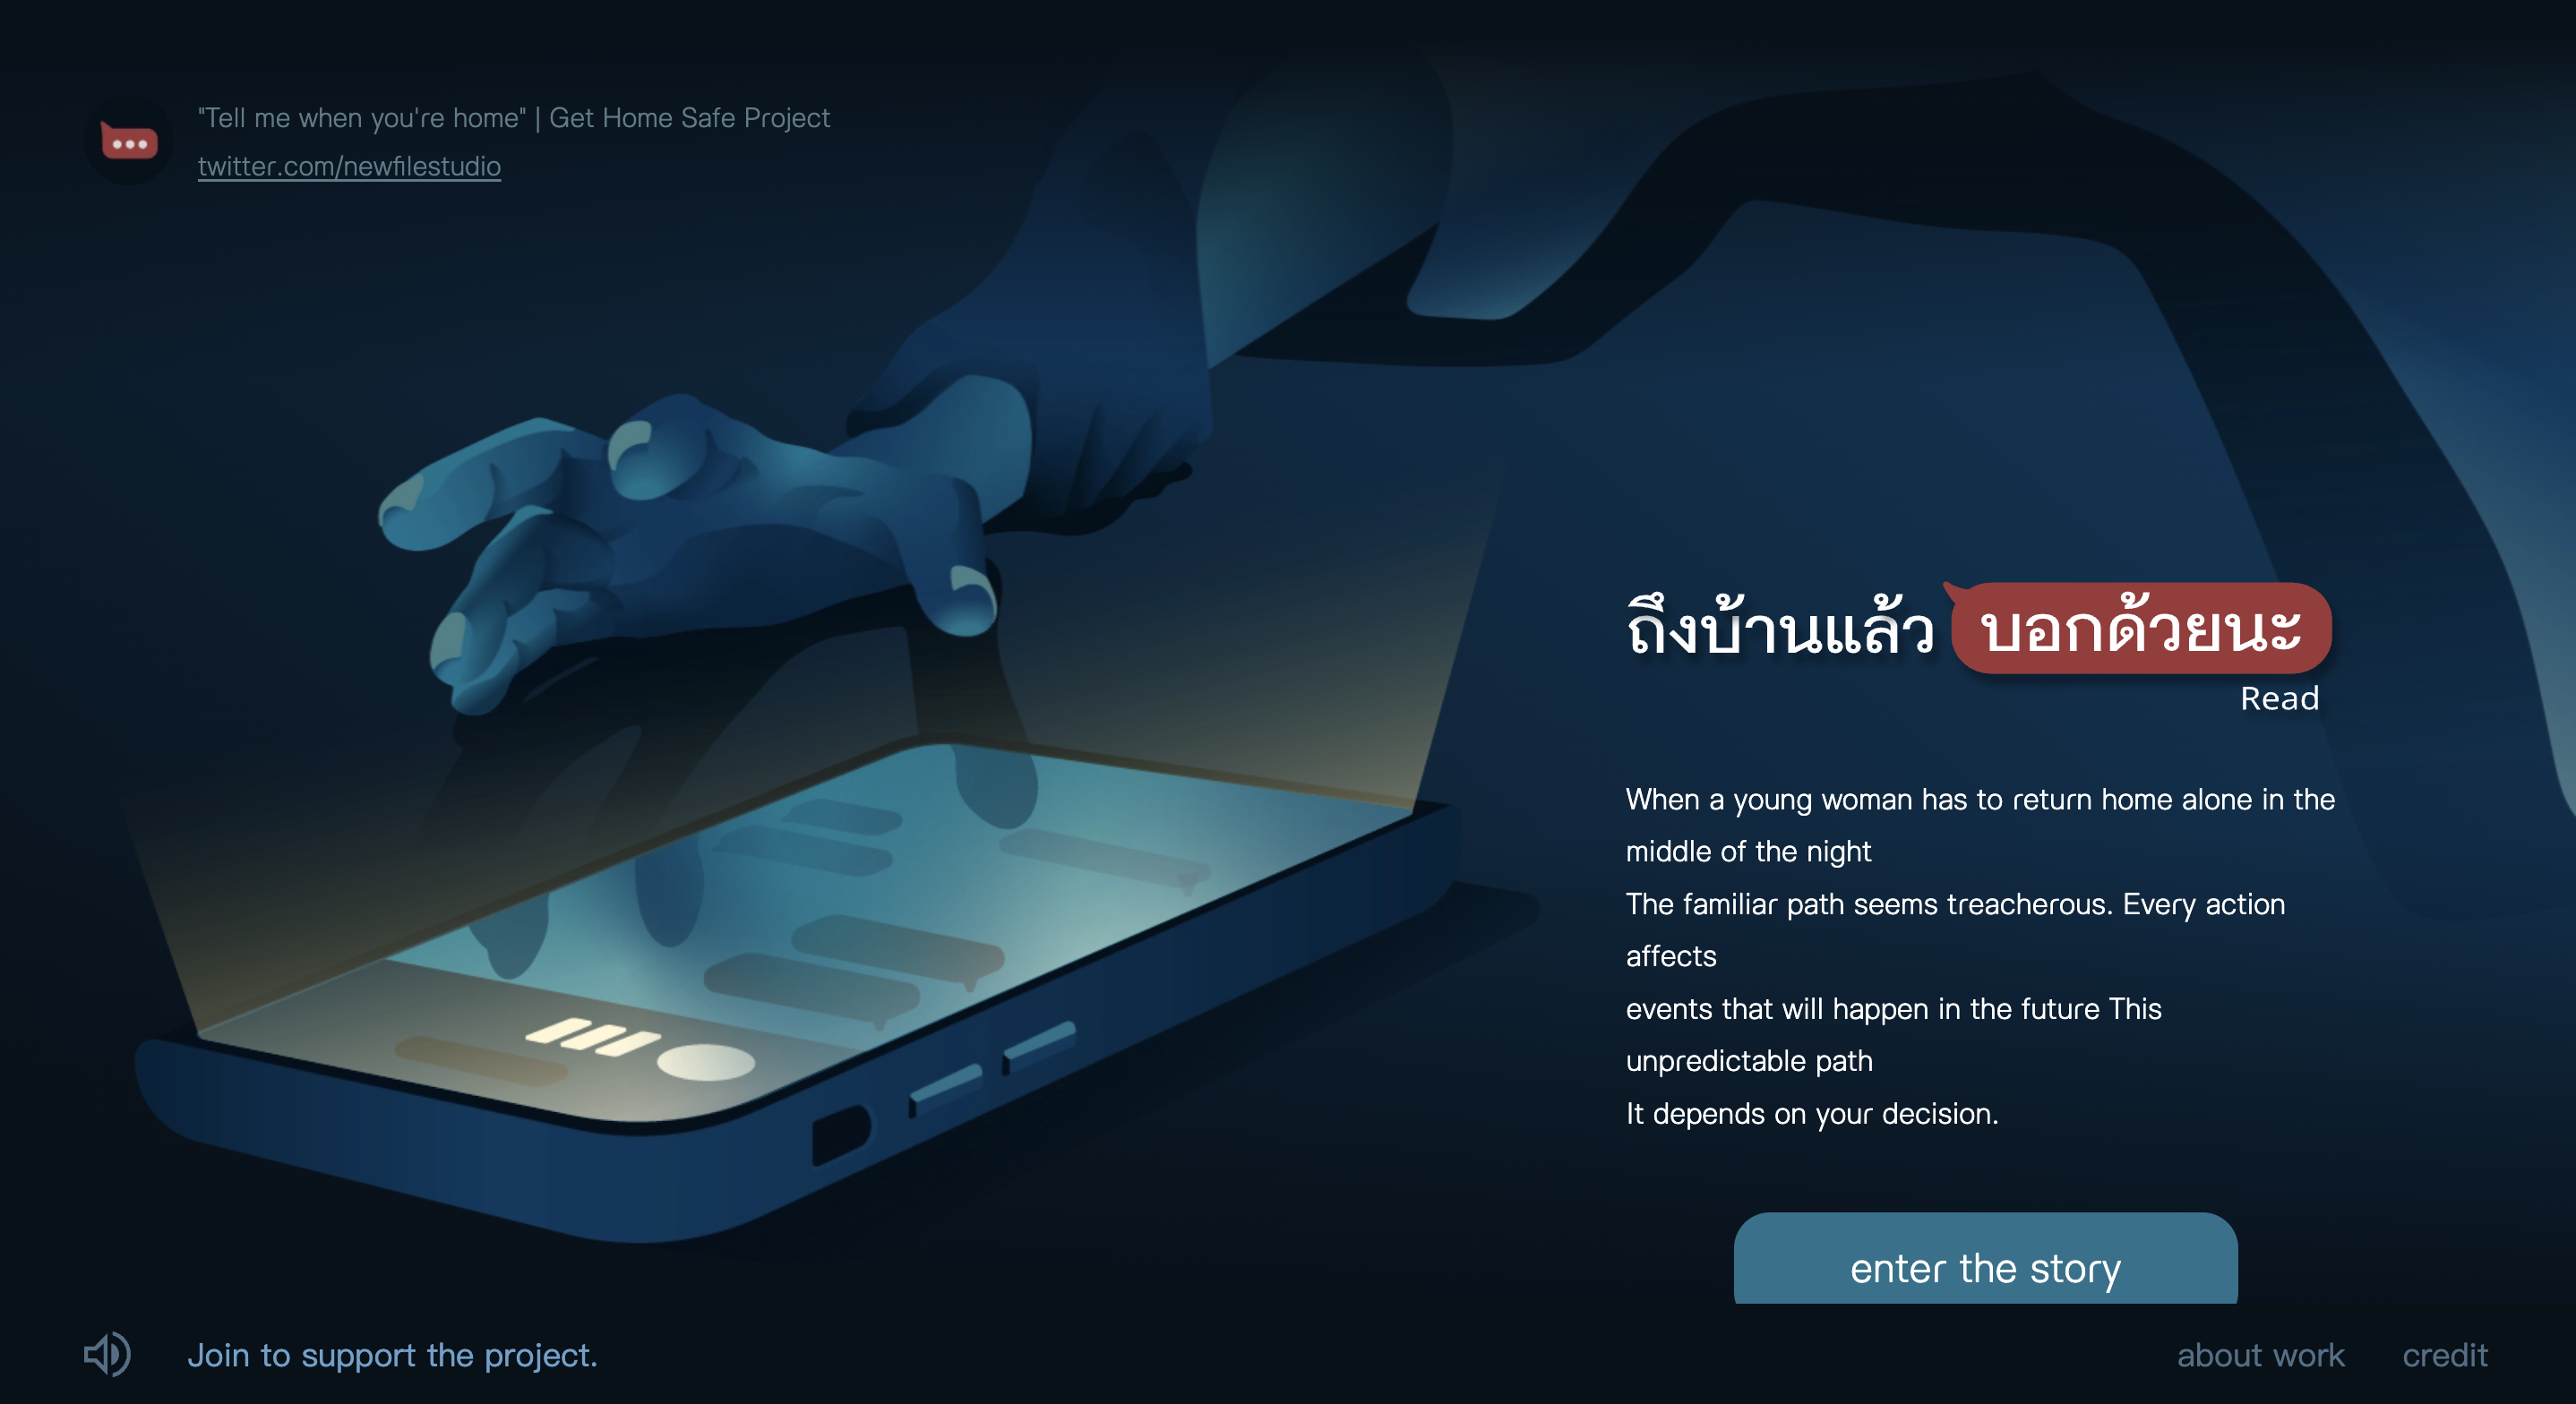 【社會設計】「到家了說個」互動式網頁情境故事，破萬泰國社群轉傳共感夜歸女子面臨風險